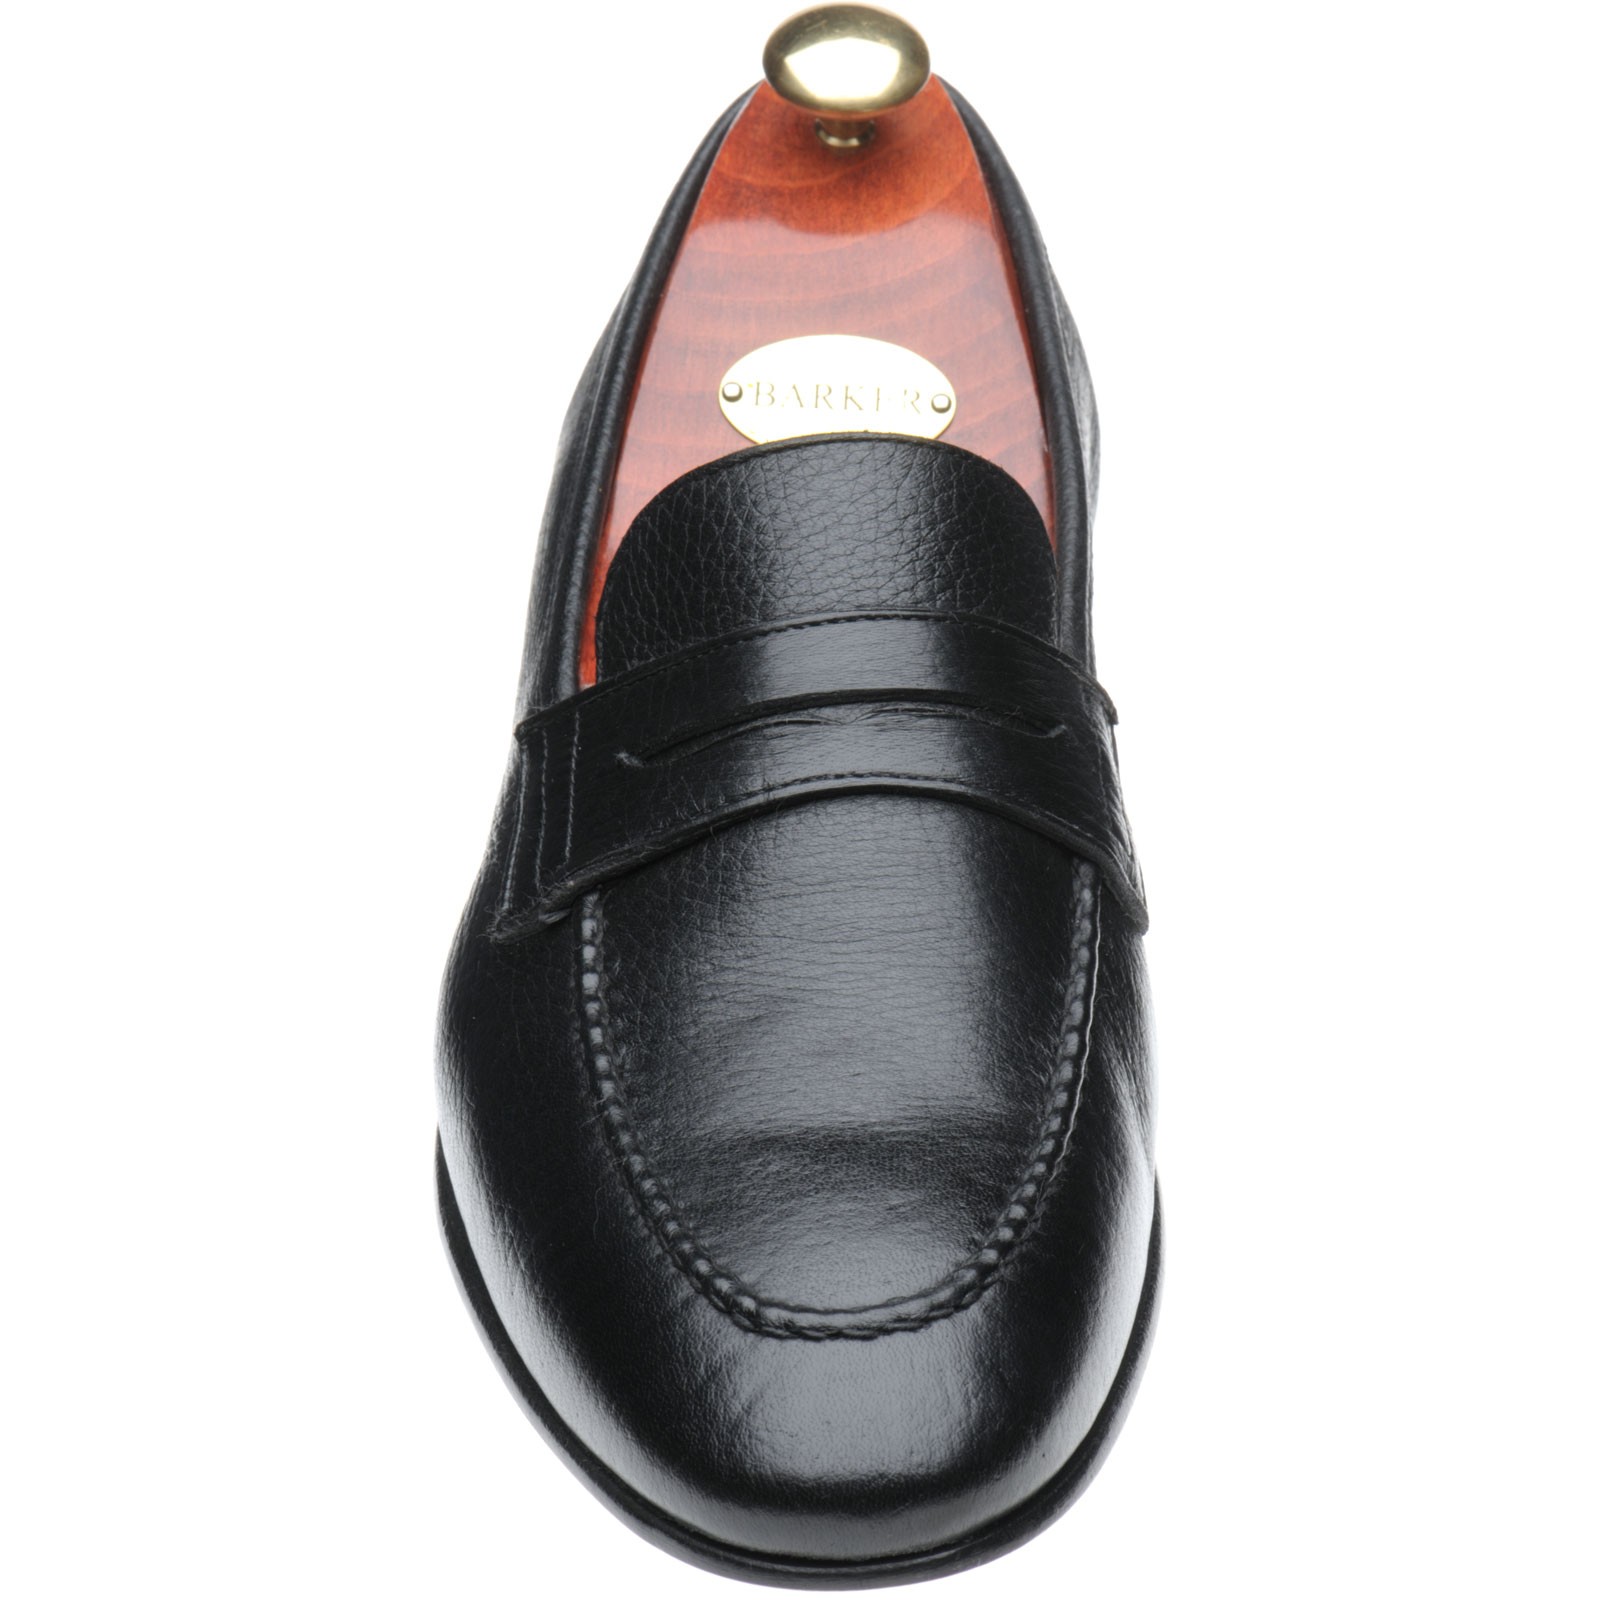 Barker shoes | Barker Moccasin Collection | Ledley in Black Deerskin at ...